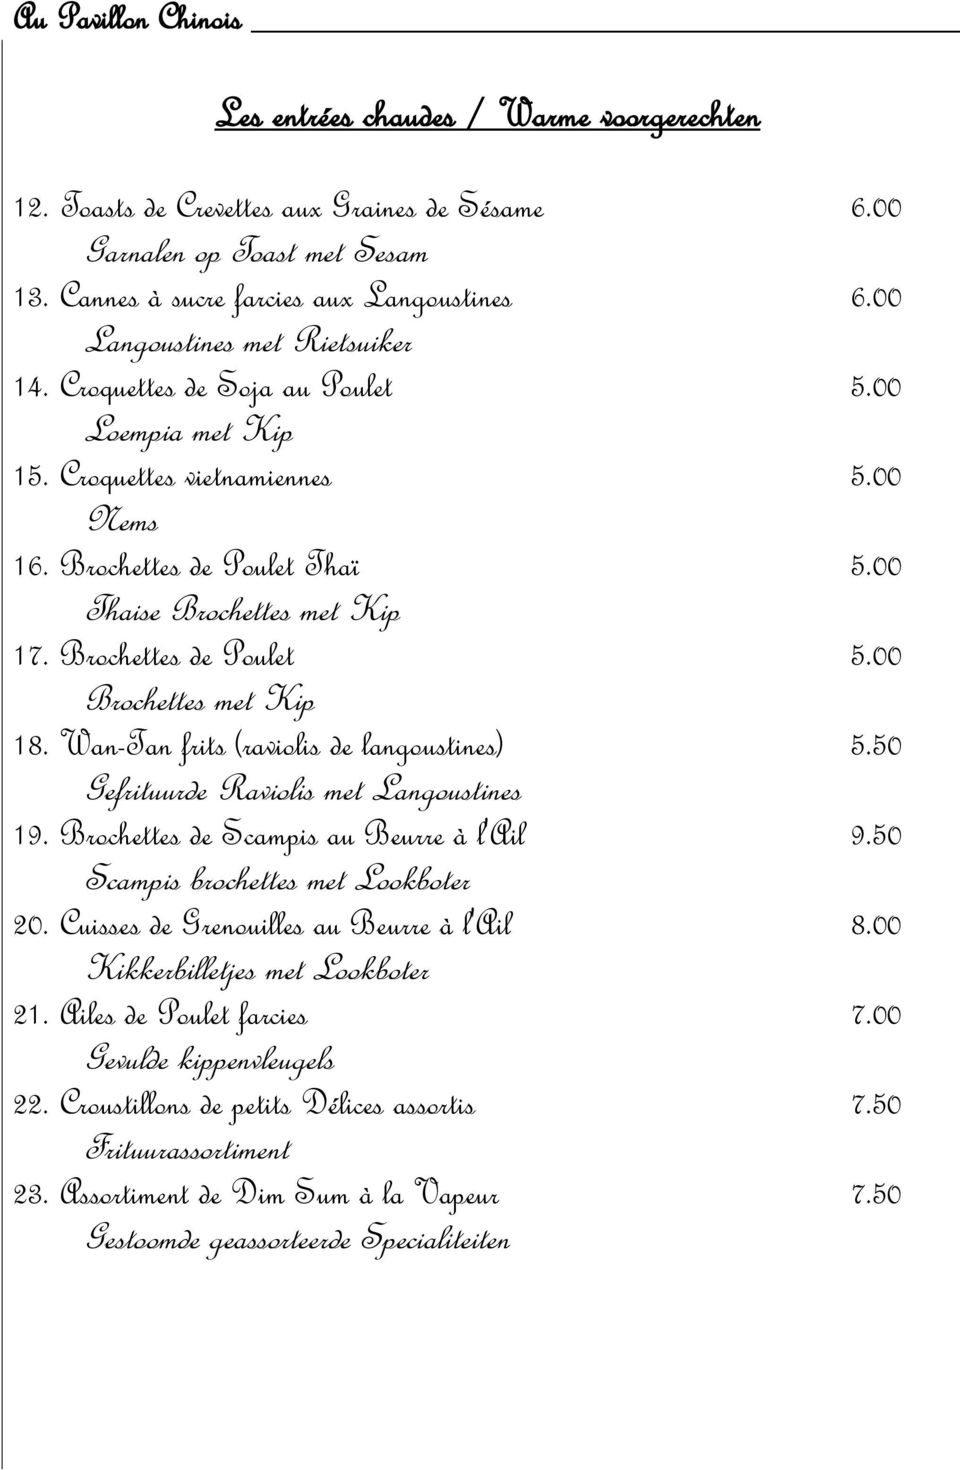 Brochettes de Poulet 5.00 Brochettes met Kip 18. Wan-Tan frits (raviolis de langoustines) 5.50 Gefrituurde Raviolis met Langoustines 19. Brochettes de Scampis au Beurre à l'ail 9.